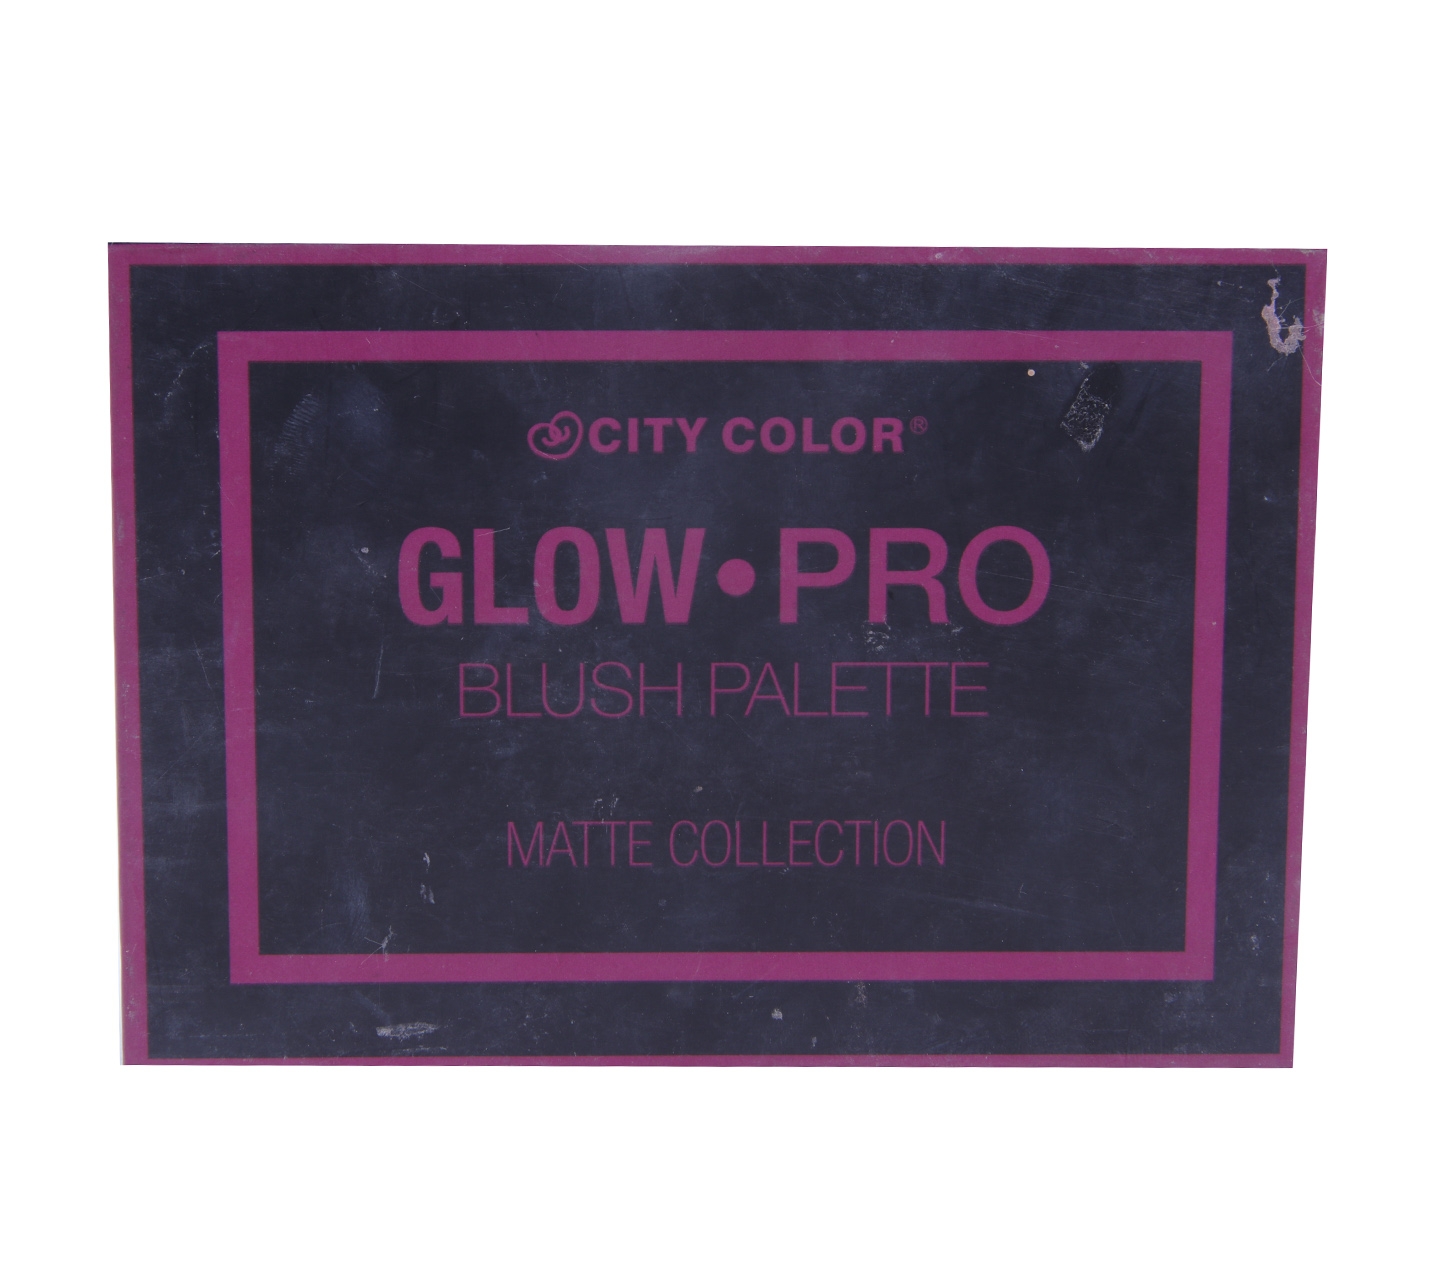 City Color Glow Pro Blush Palette Matte Colection Sets and Palette